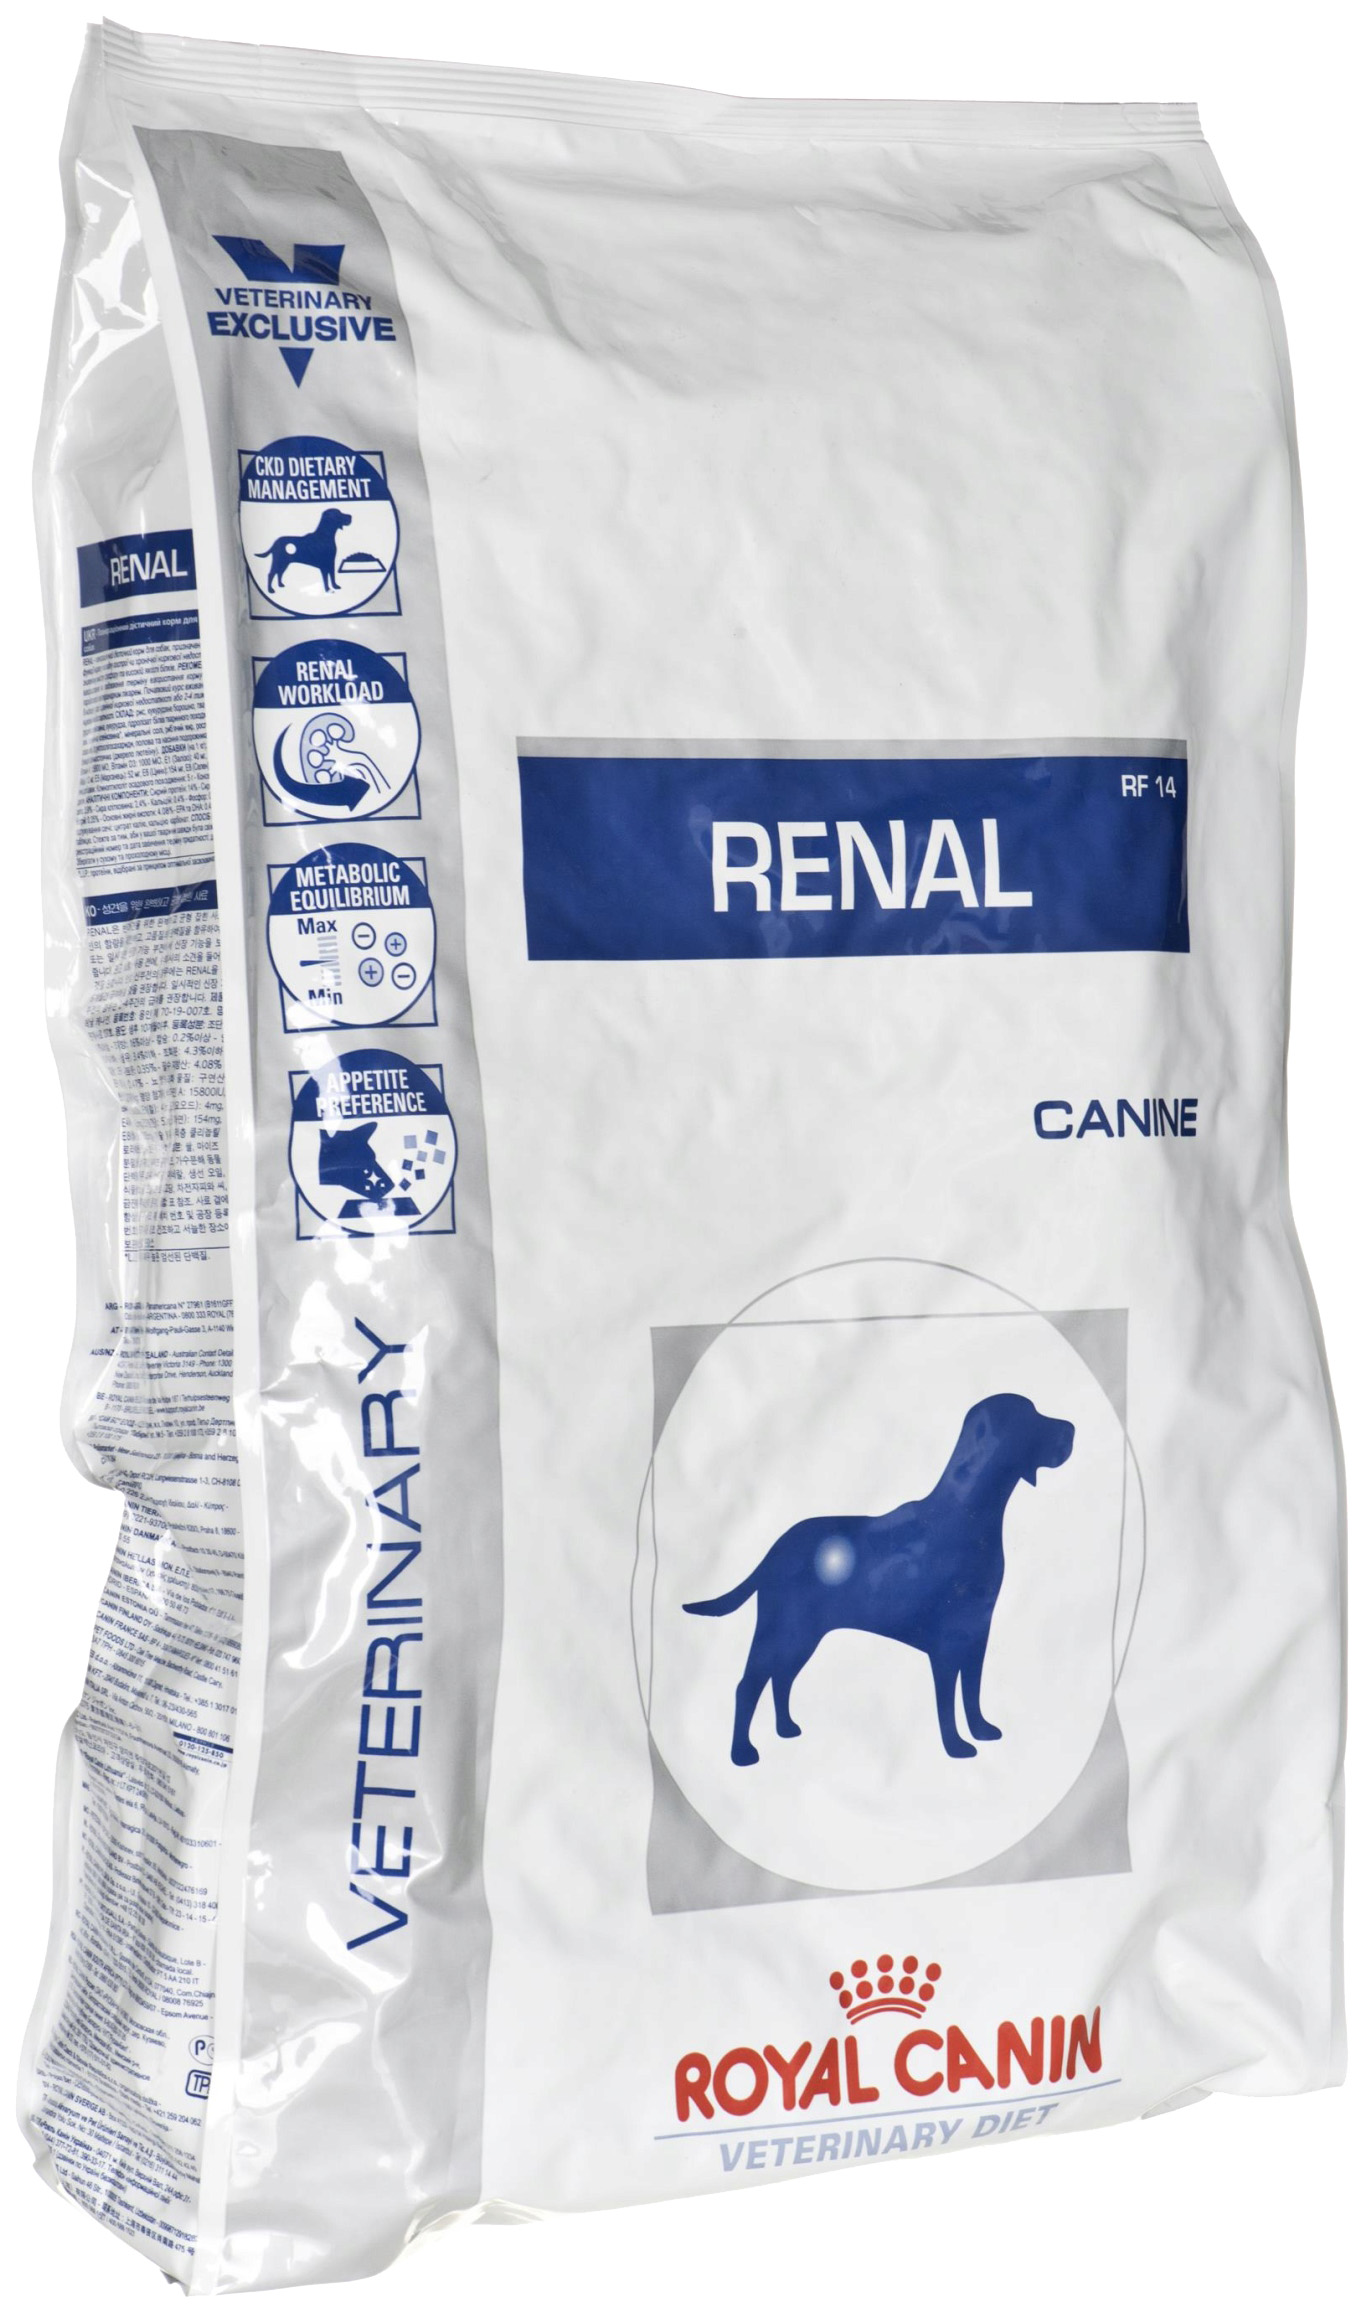 фото Сухой корм для собак royal canin renal rf14 при почечной недостаточности, 2 шт по 2 кг